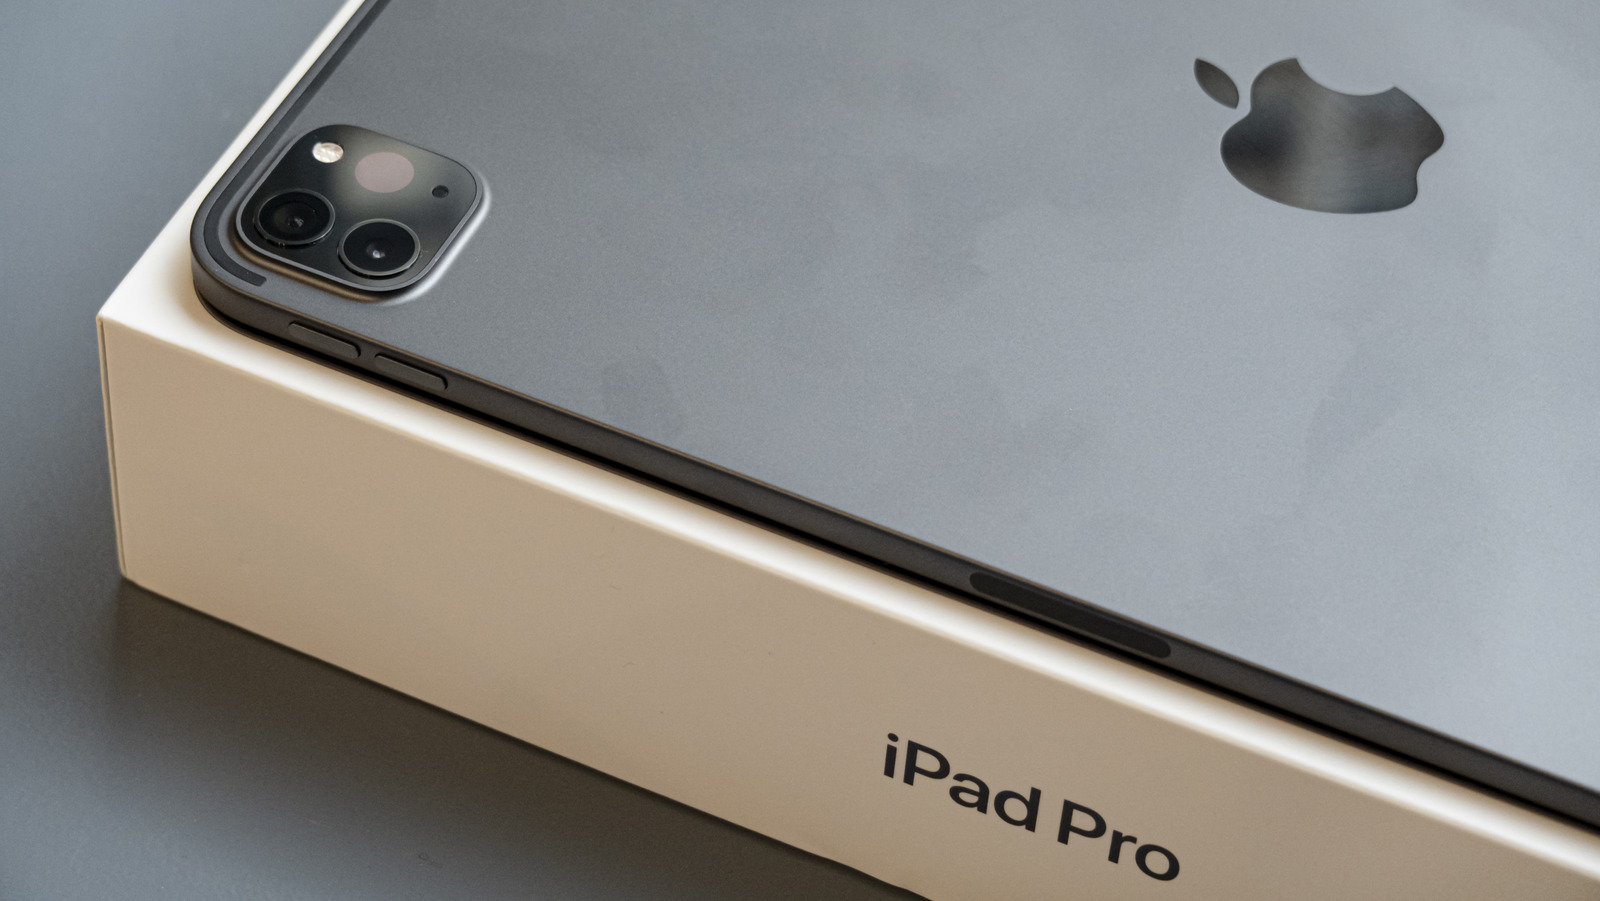 ¿Puede el iPad Pro realmente reemplazar a tu Mac?  Echamos un vistazo más de cerca